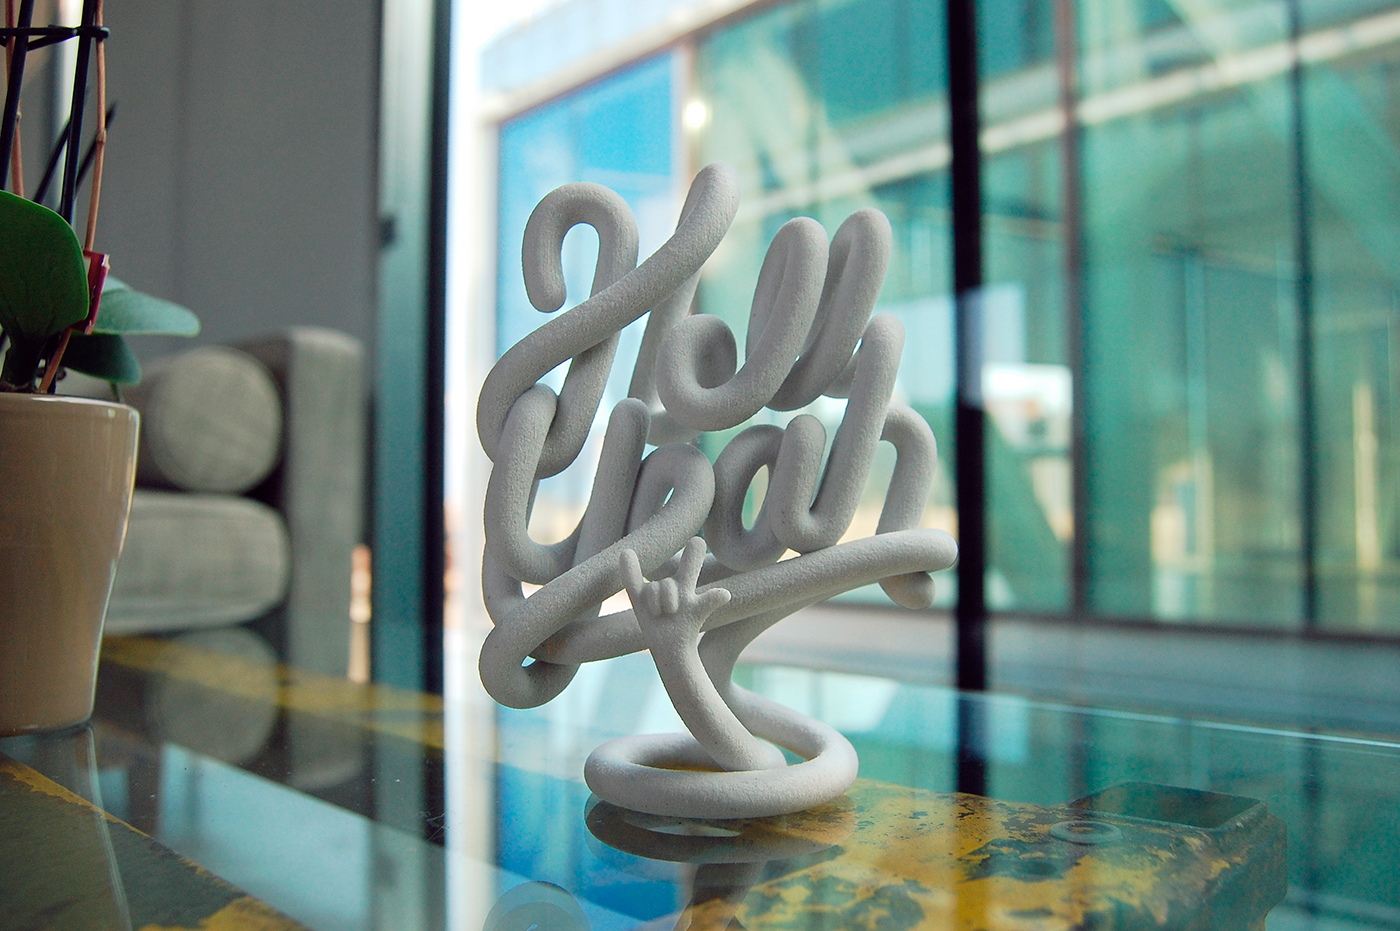 Adobe Portfolio sculpture escultura objeto 3dprint HELL YEAH White ceramic ceramica letter